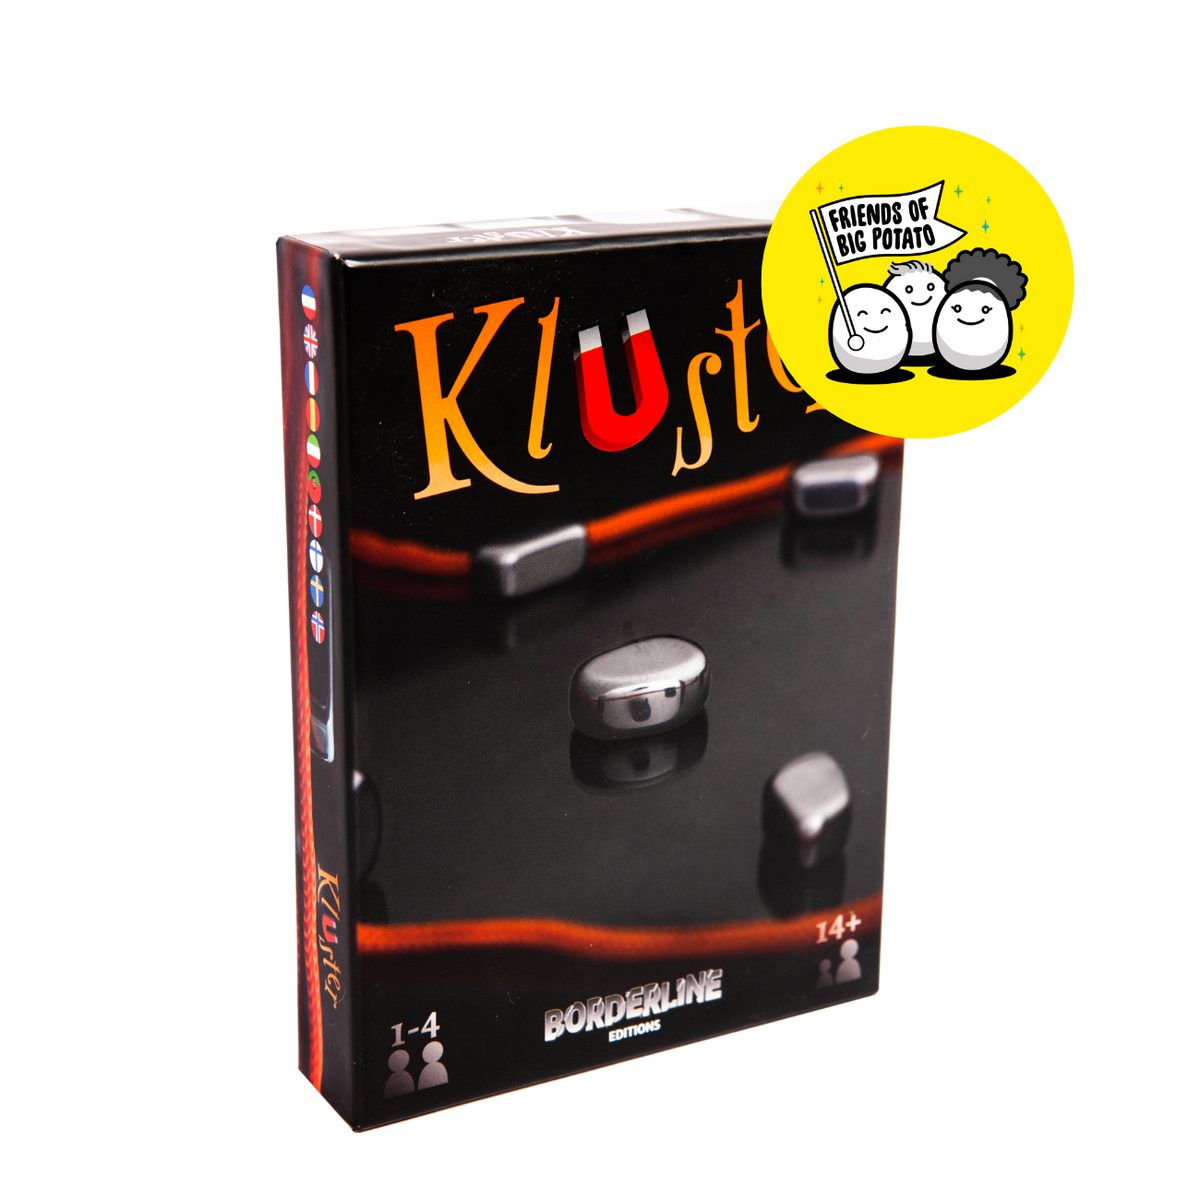 Kluster game box